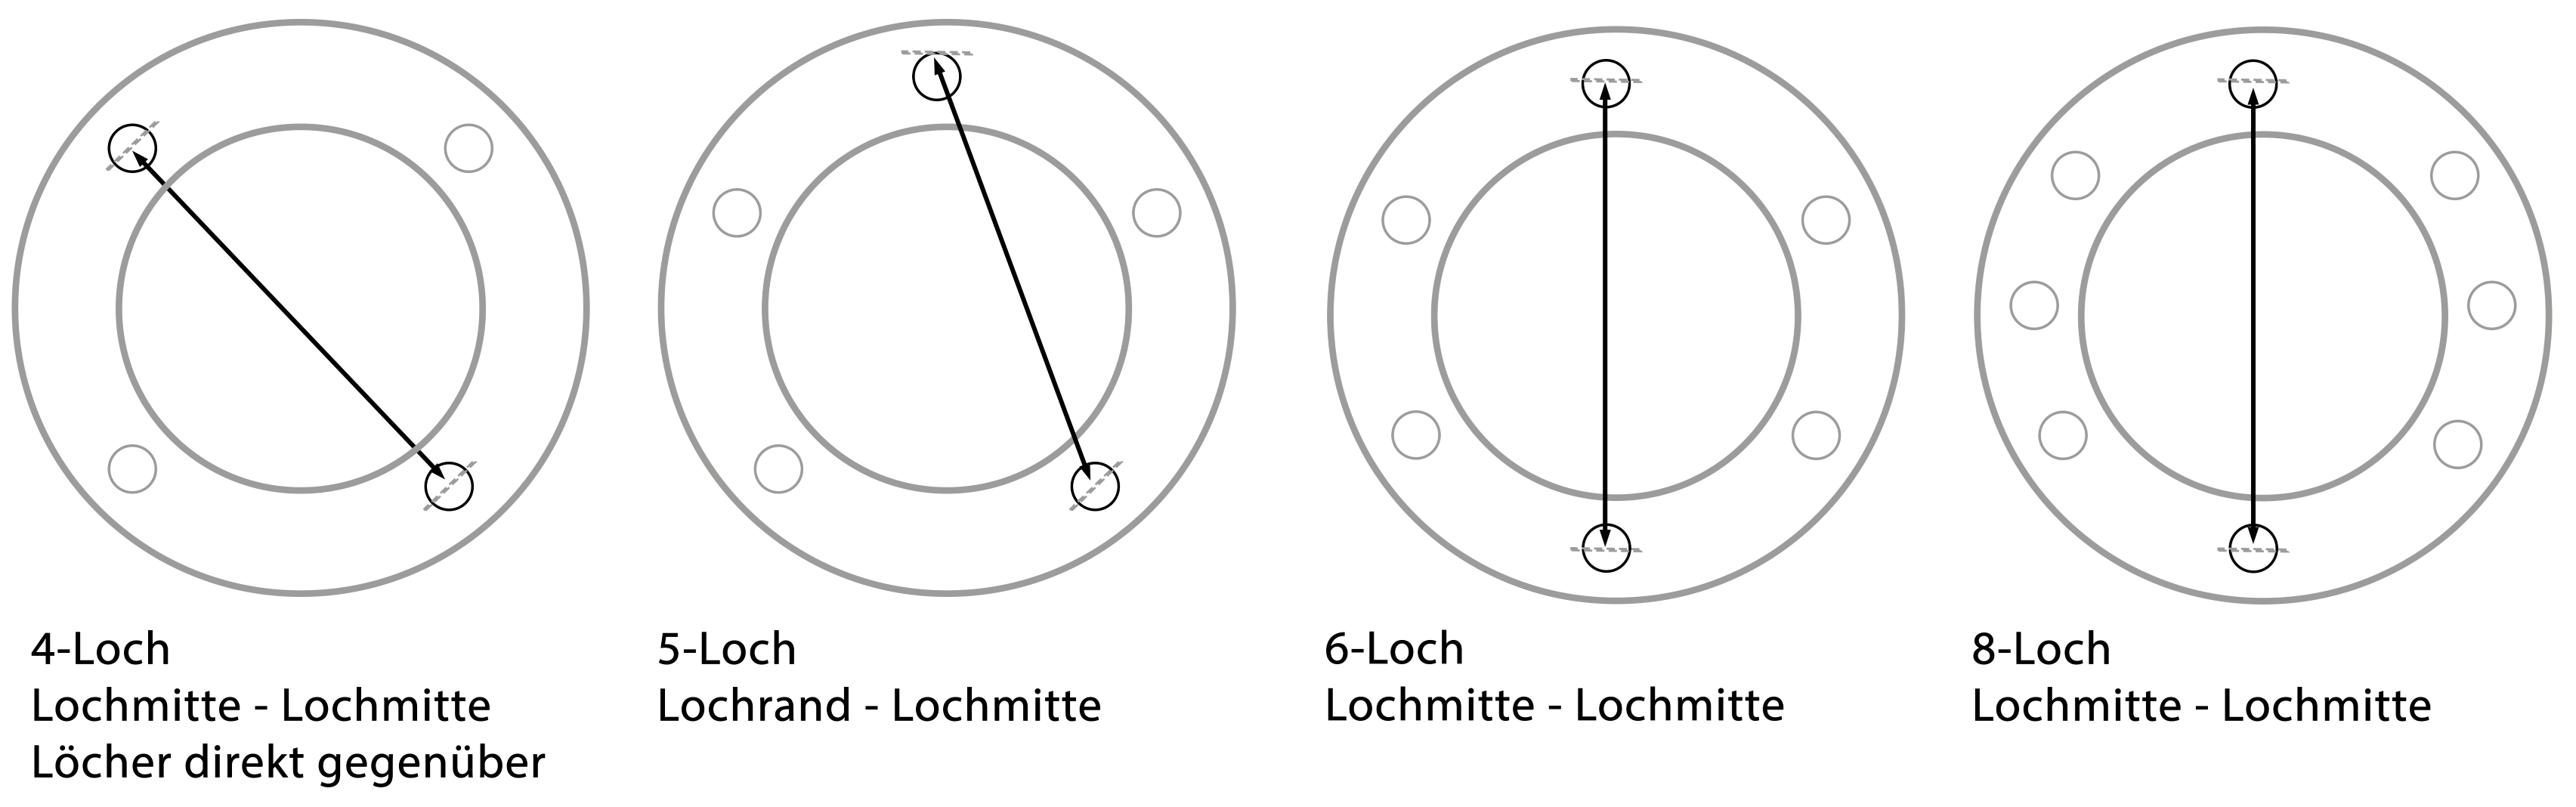 Kreissler Lochkreis-Beschreibung